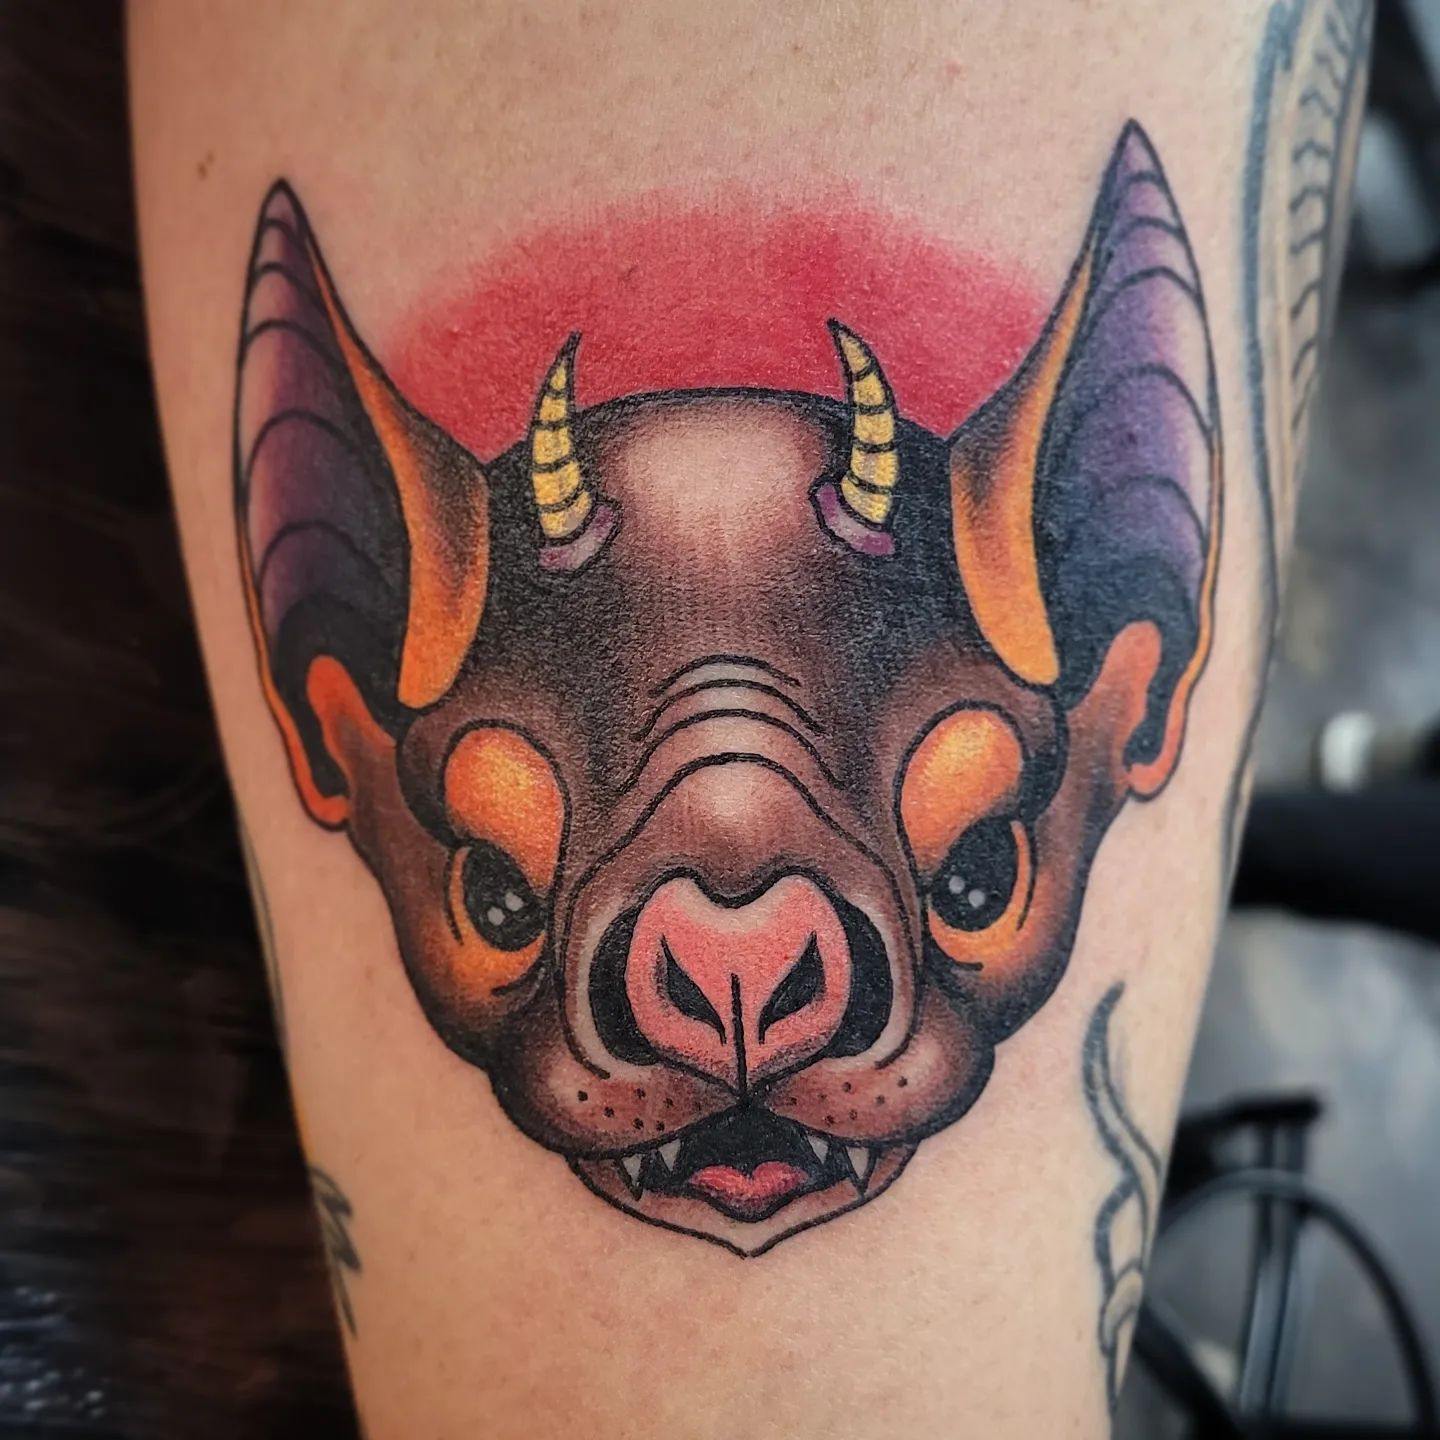 Tatuaje espeluznante de murciélago colorido.